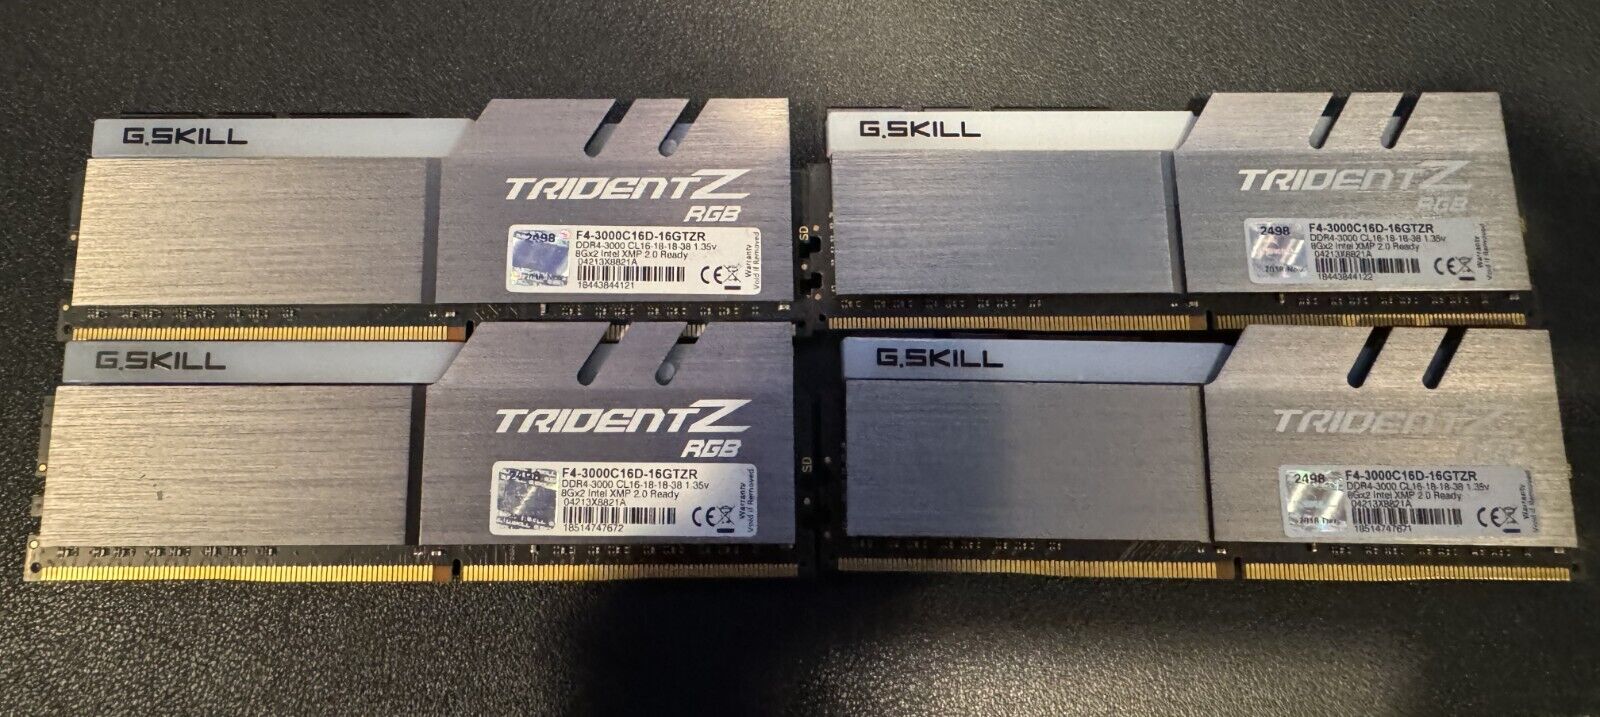 G. SKILL Trident Z RGB RAM 32GB (4 x 8GB)  (DDR4-3000) F4 3000C16D-16GTZR